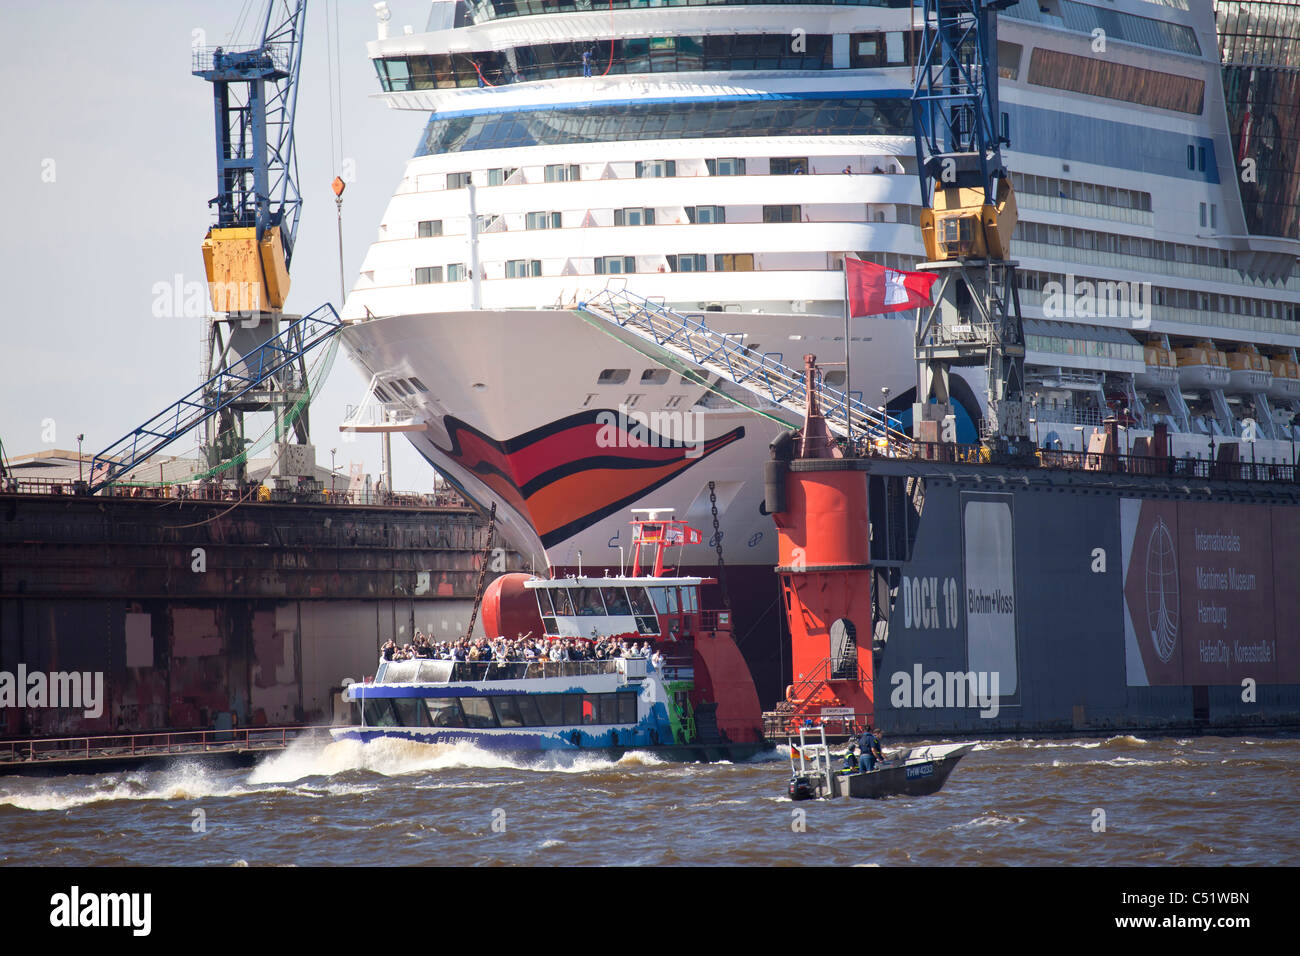 Crucero Aida en un muelle del puerto de la Ciudad Libre y Hanseática de Hamburgo, Alemania. Foto de stock